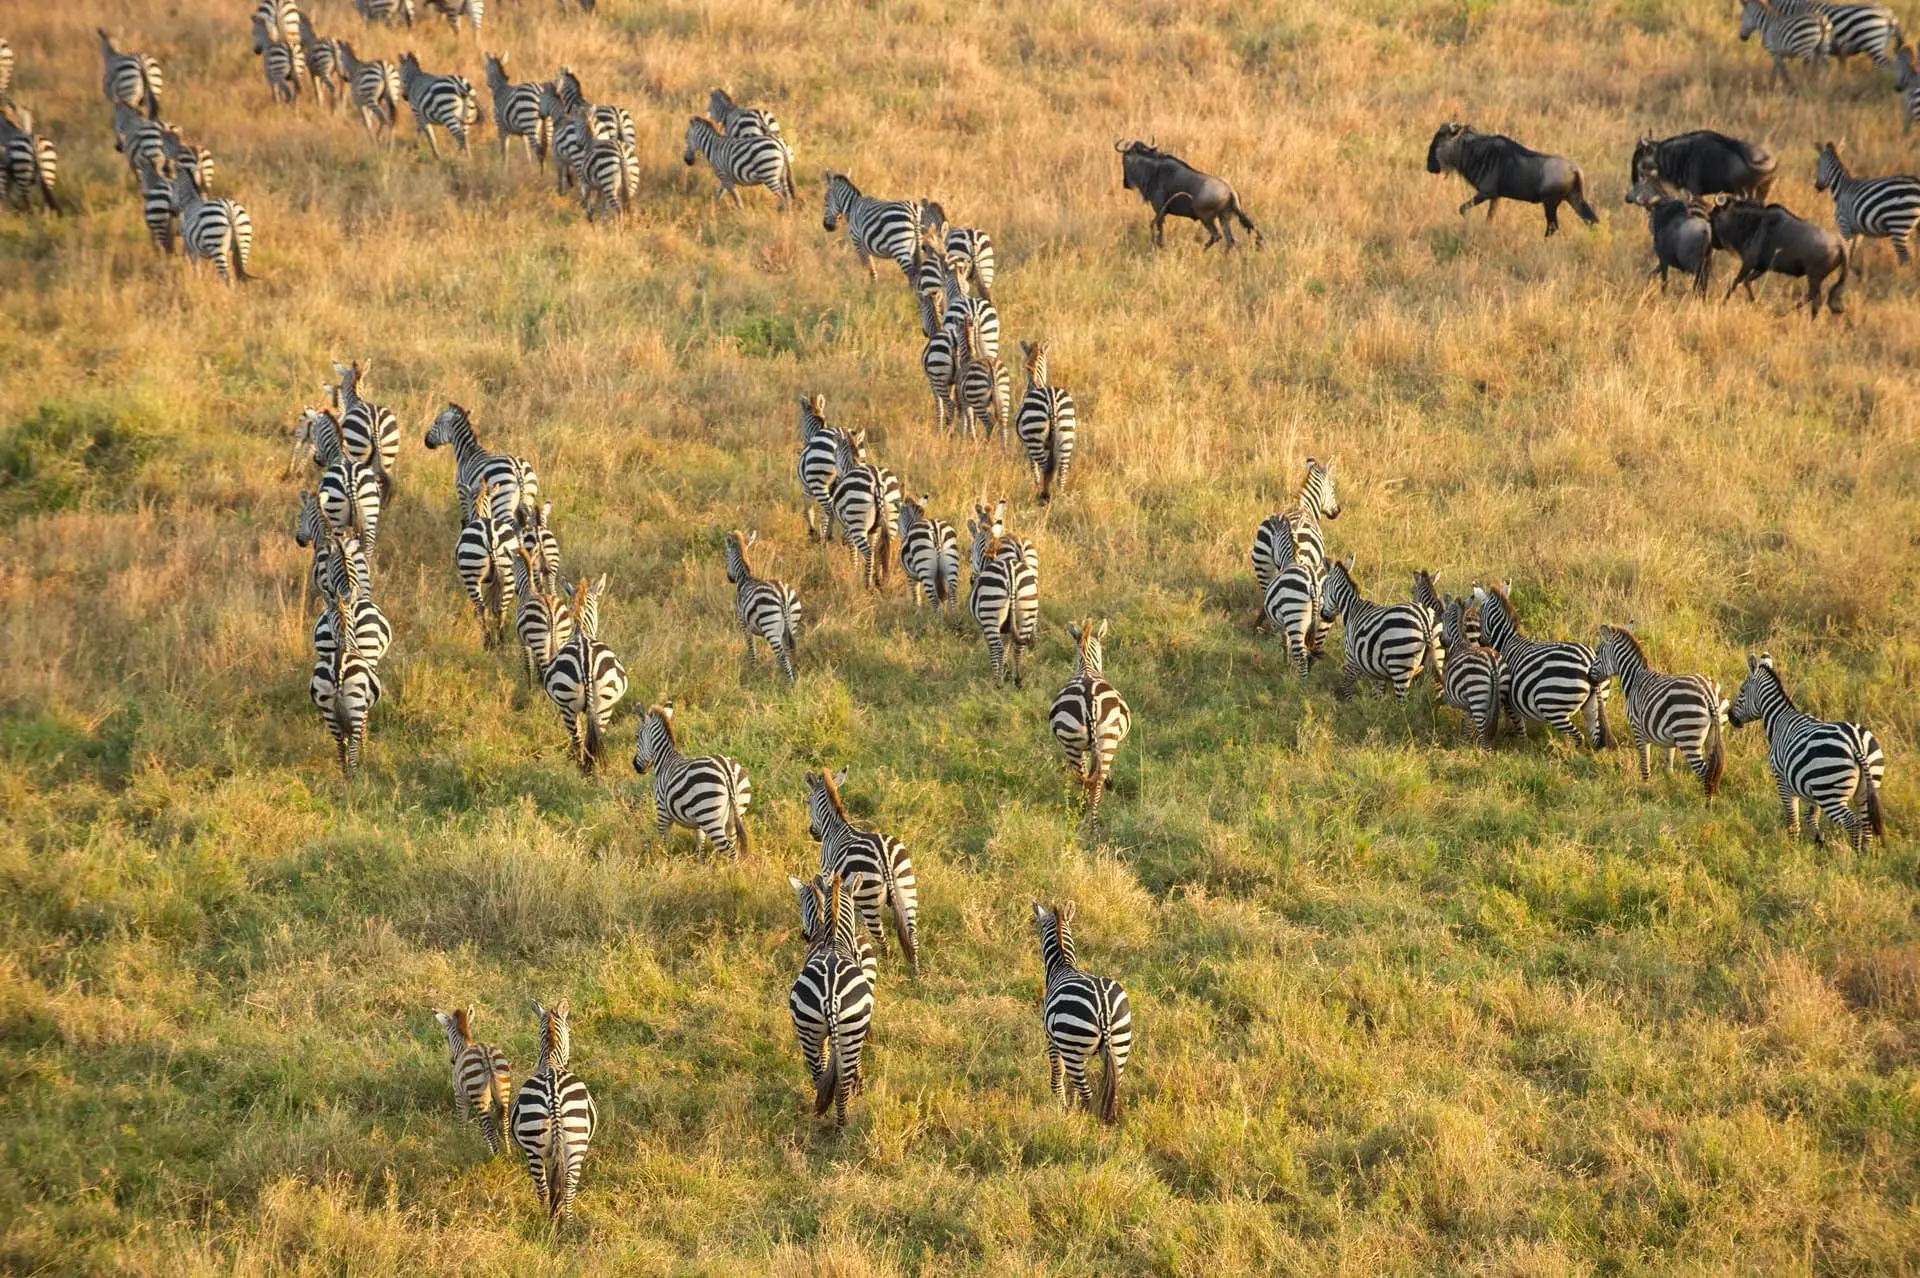 Kenya safari Packages - Zebras in Maasai Mara national Park